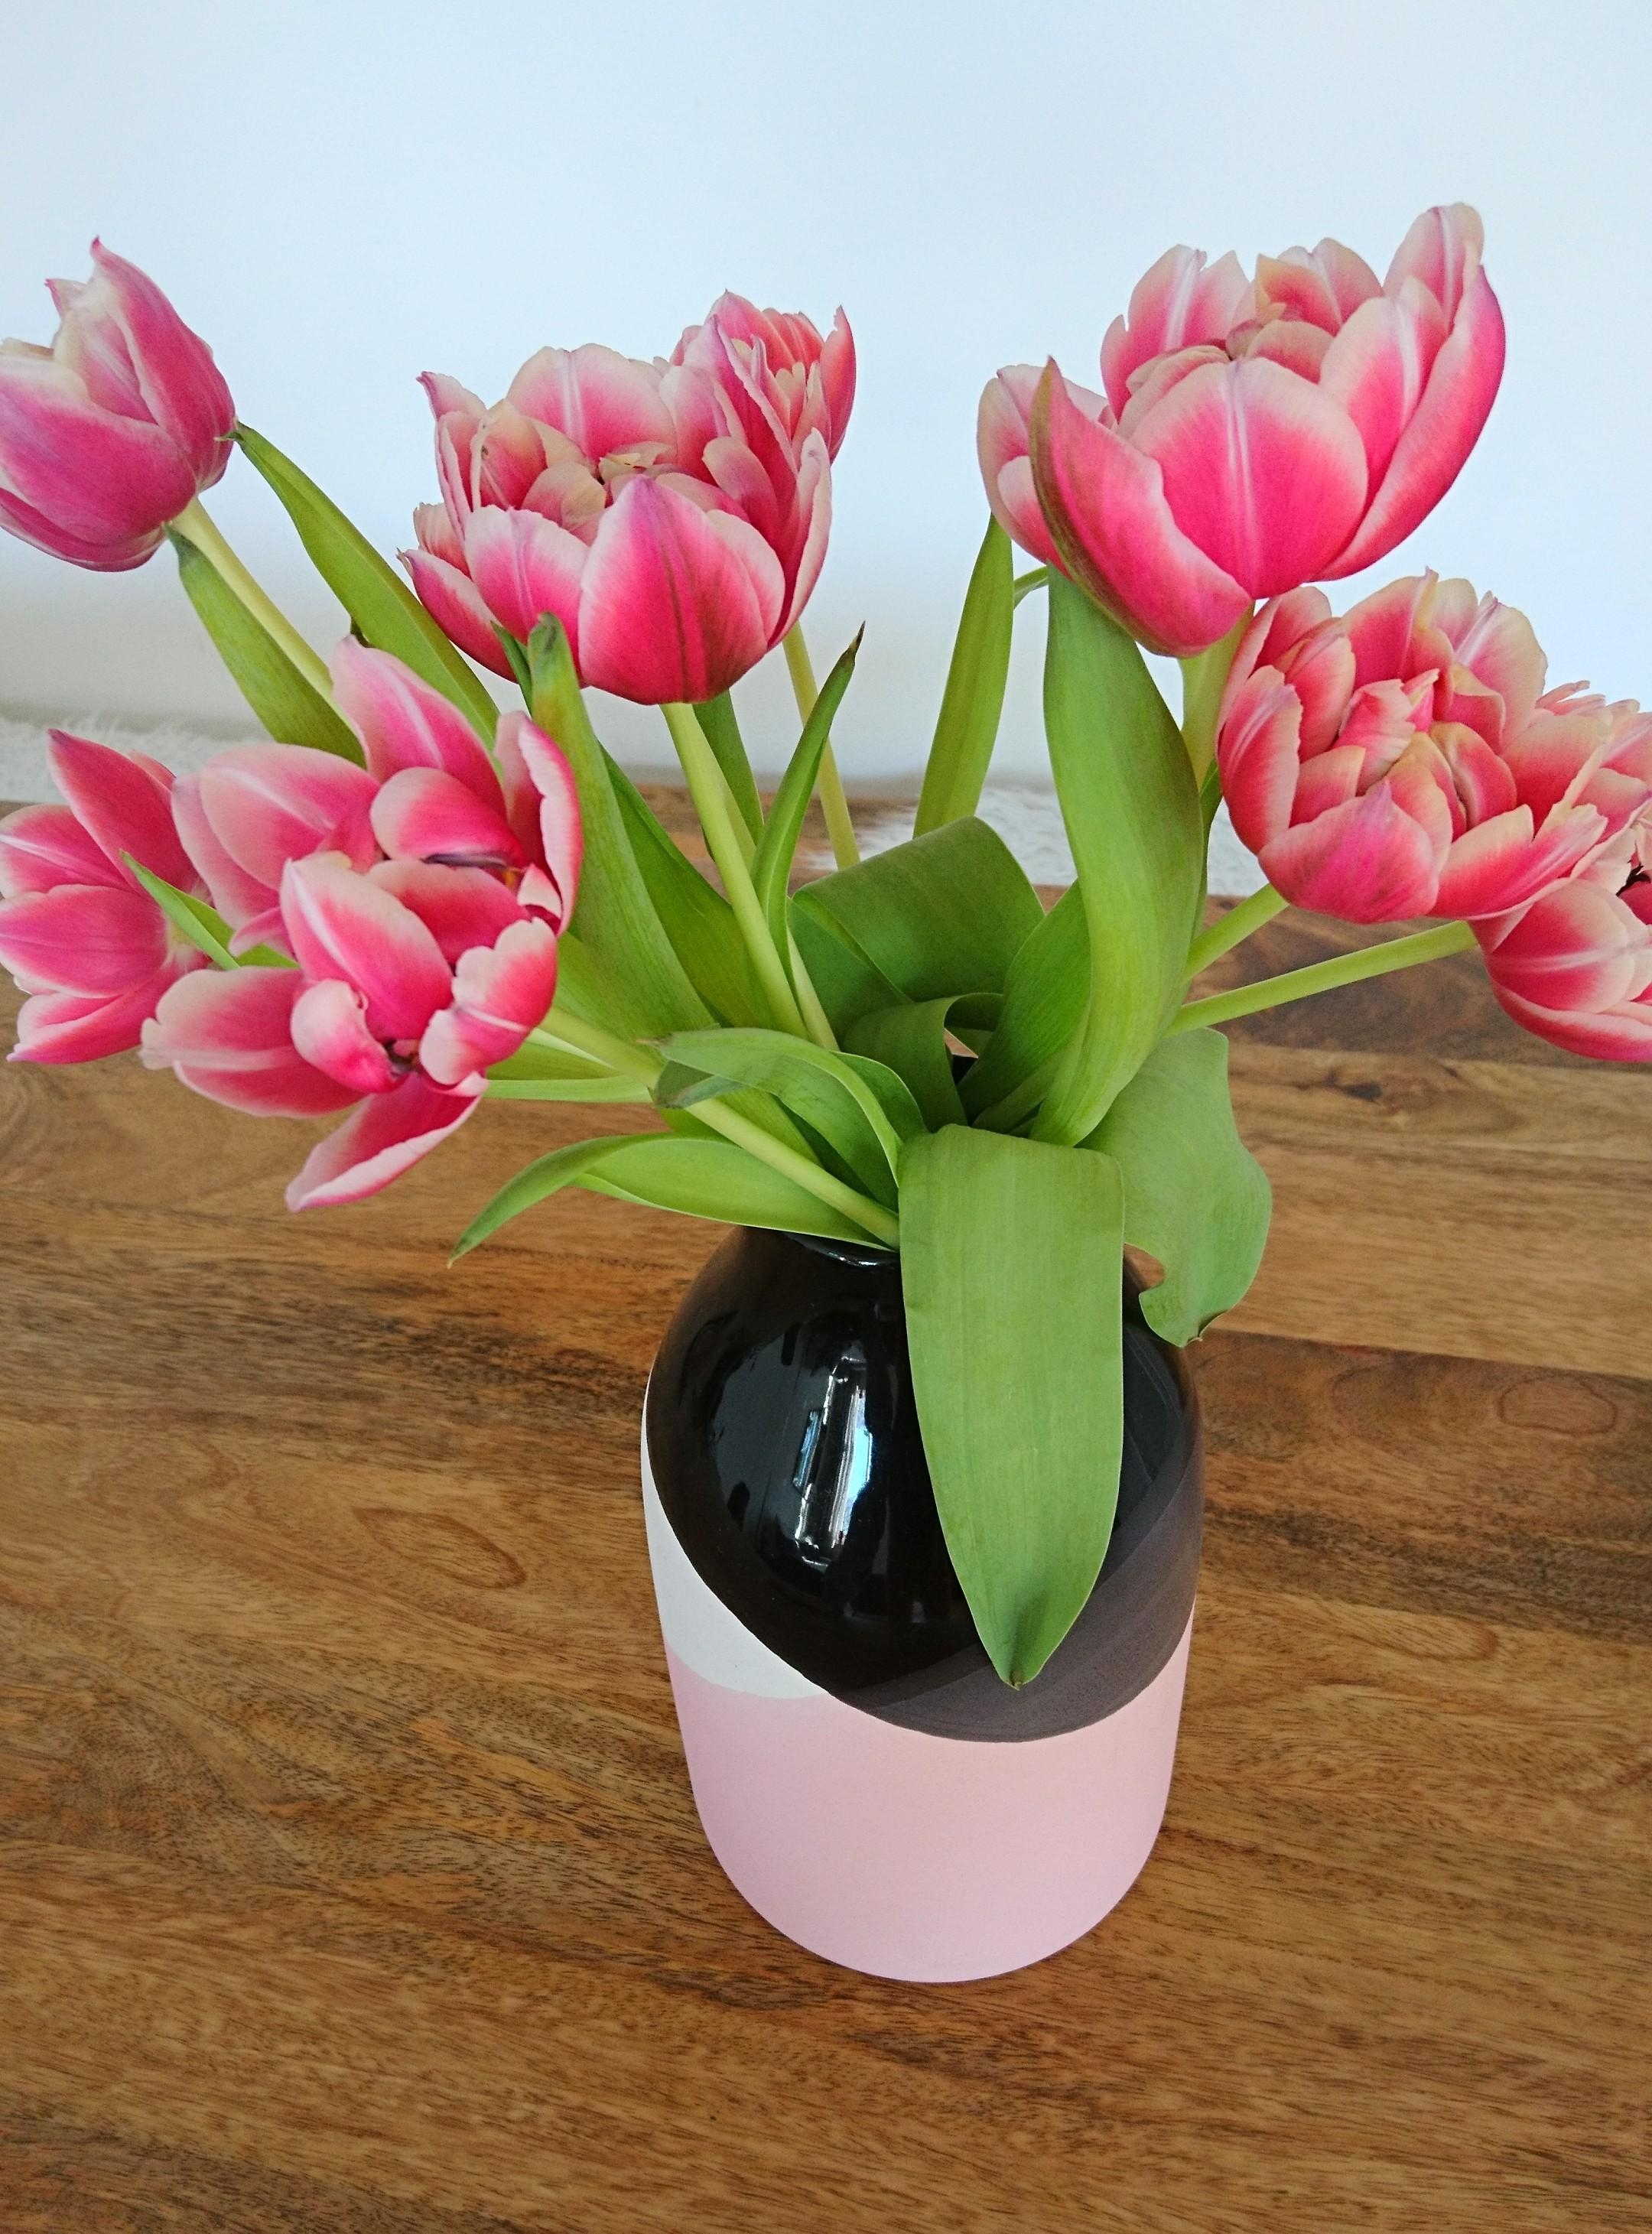 Euch allen ein HAPPY WEEKEND! ☀️🌸🍦
#flowers #Blumenliebe #Blumen #Blumenstrauß #vase #freshflowerfriday